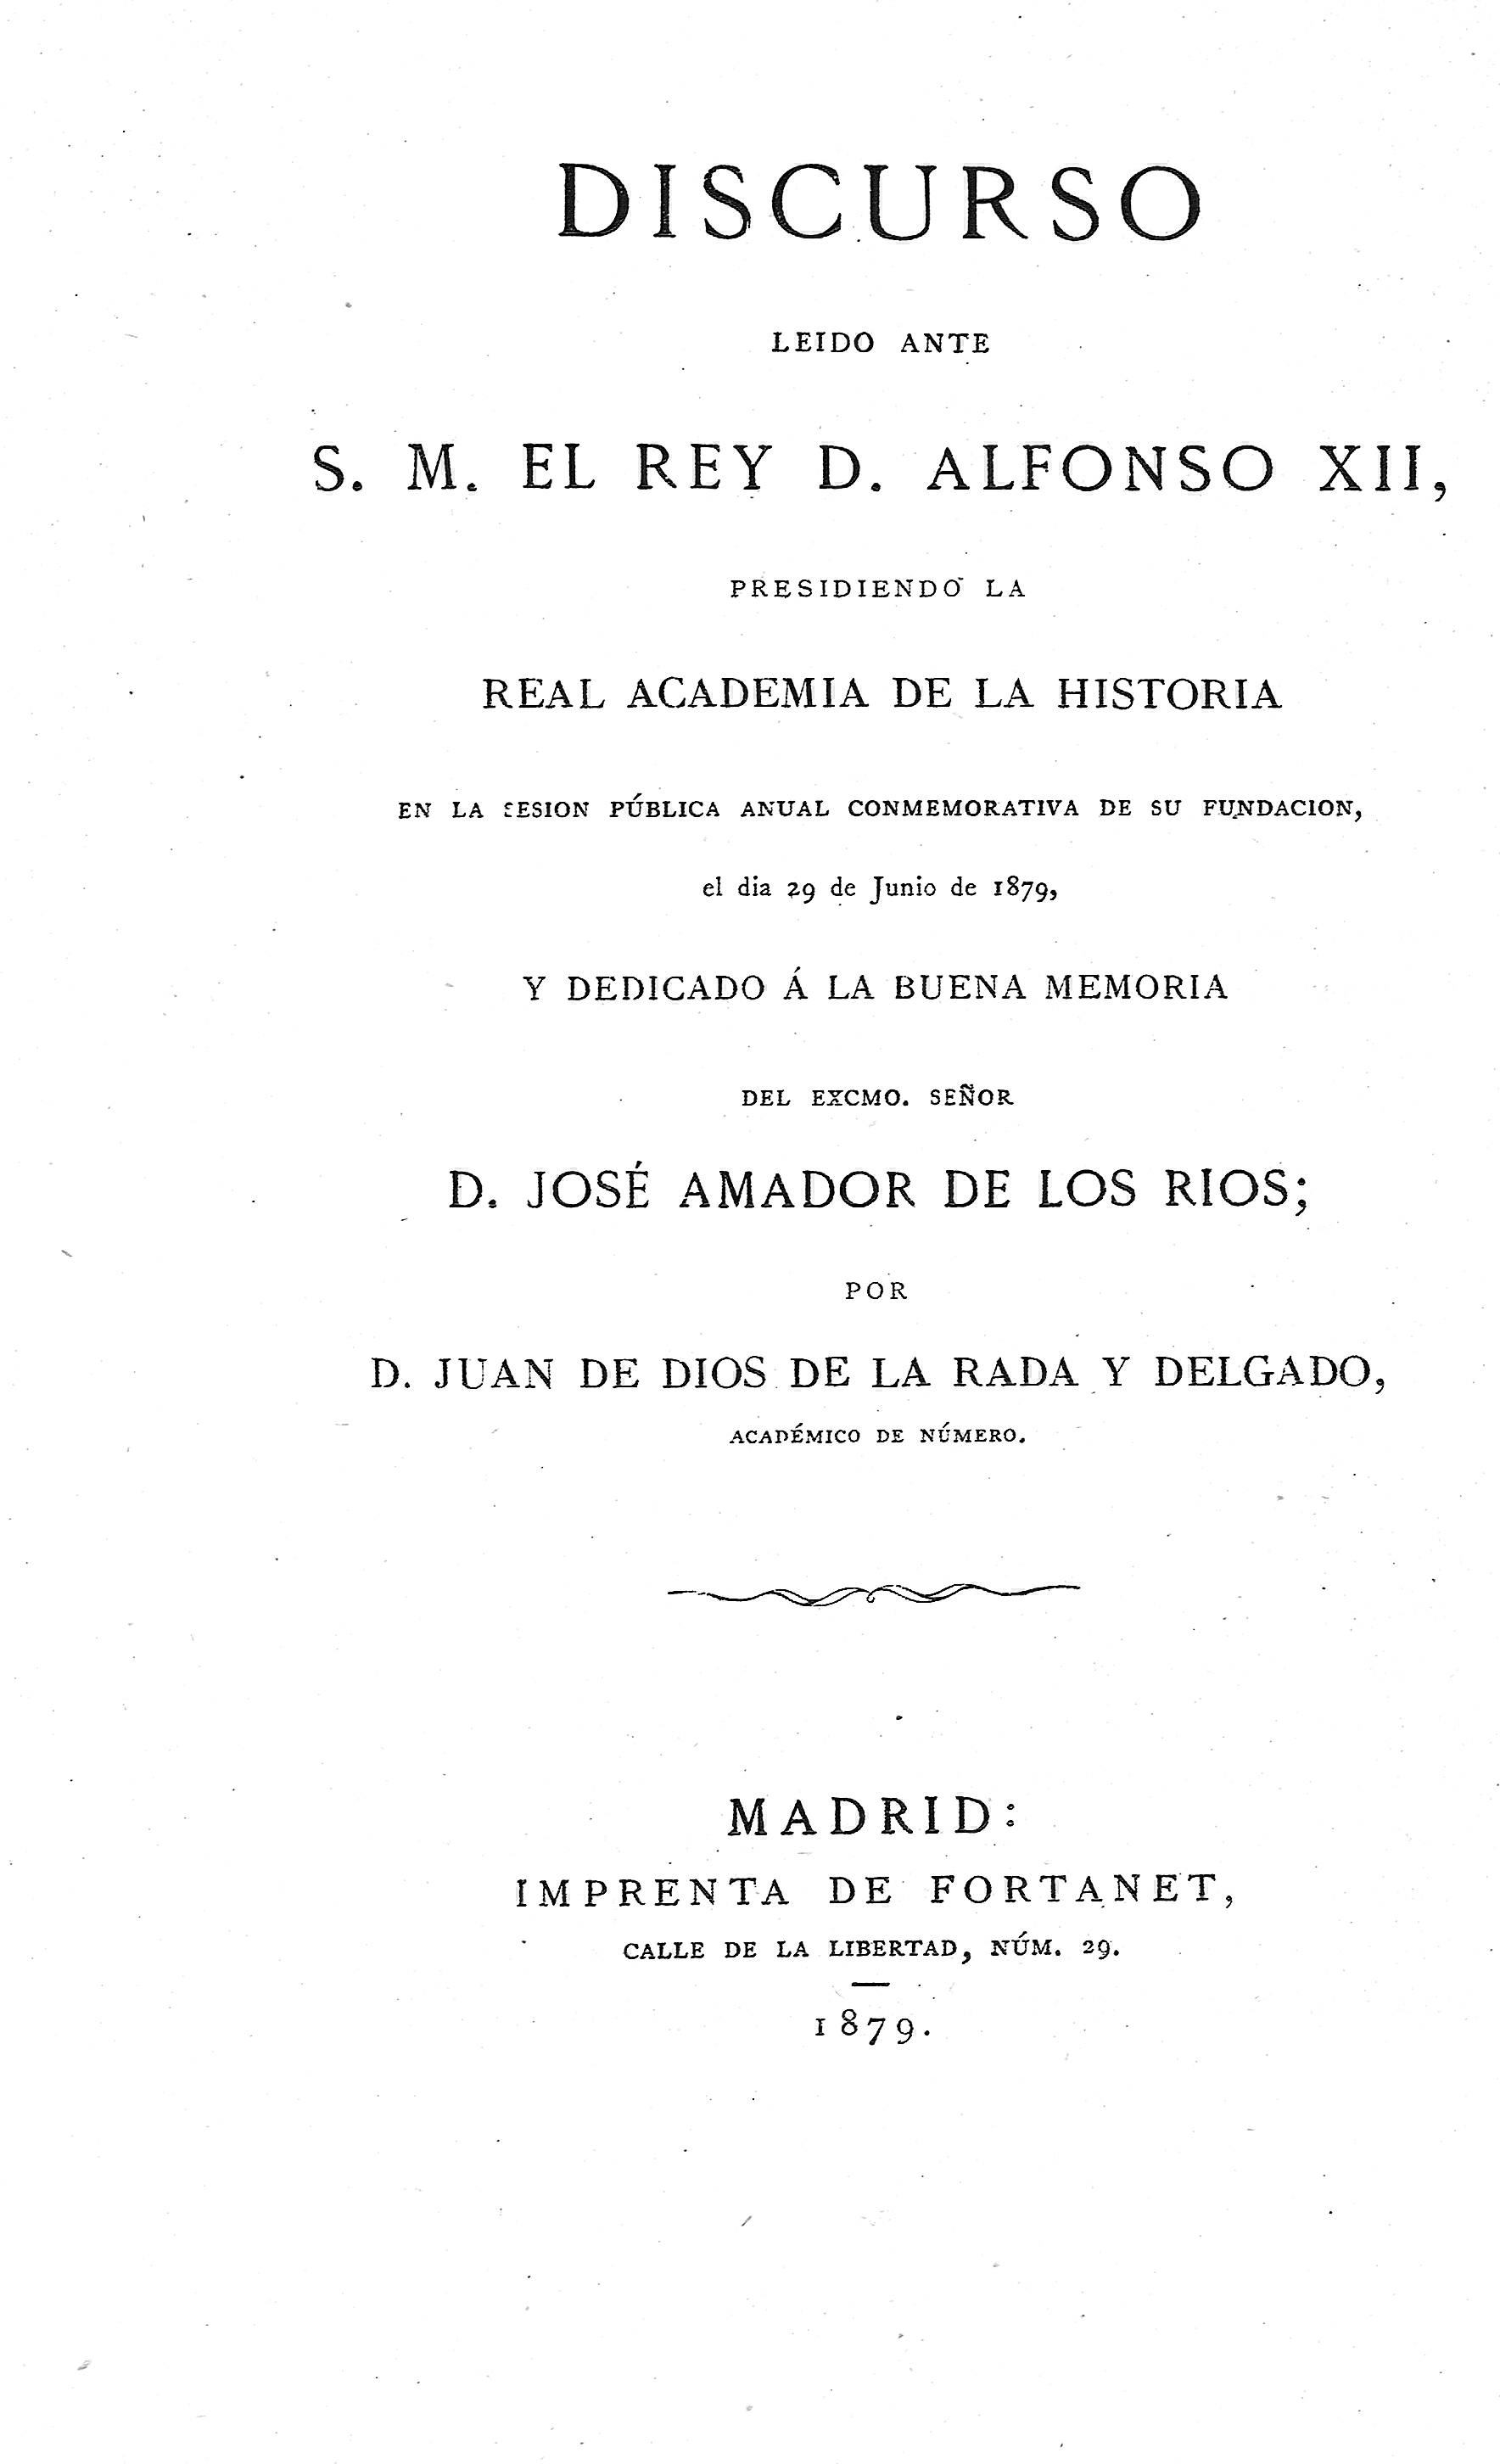 Discurso leido ante S. M. el Rey D. Alfonso XII... y dedicado a la memoria de  D. José Amador de los Ríos